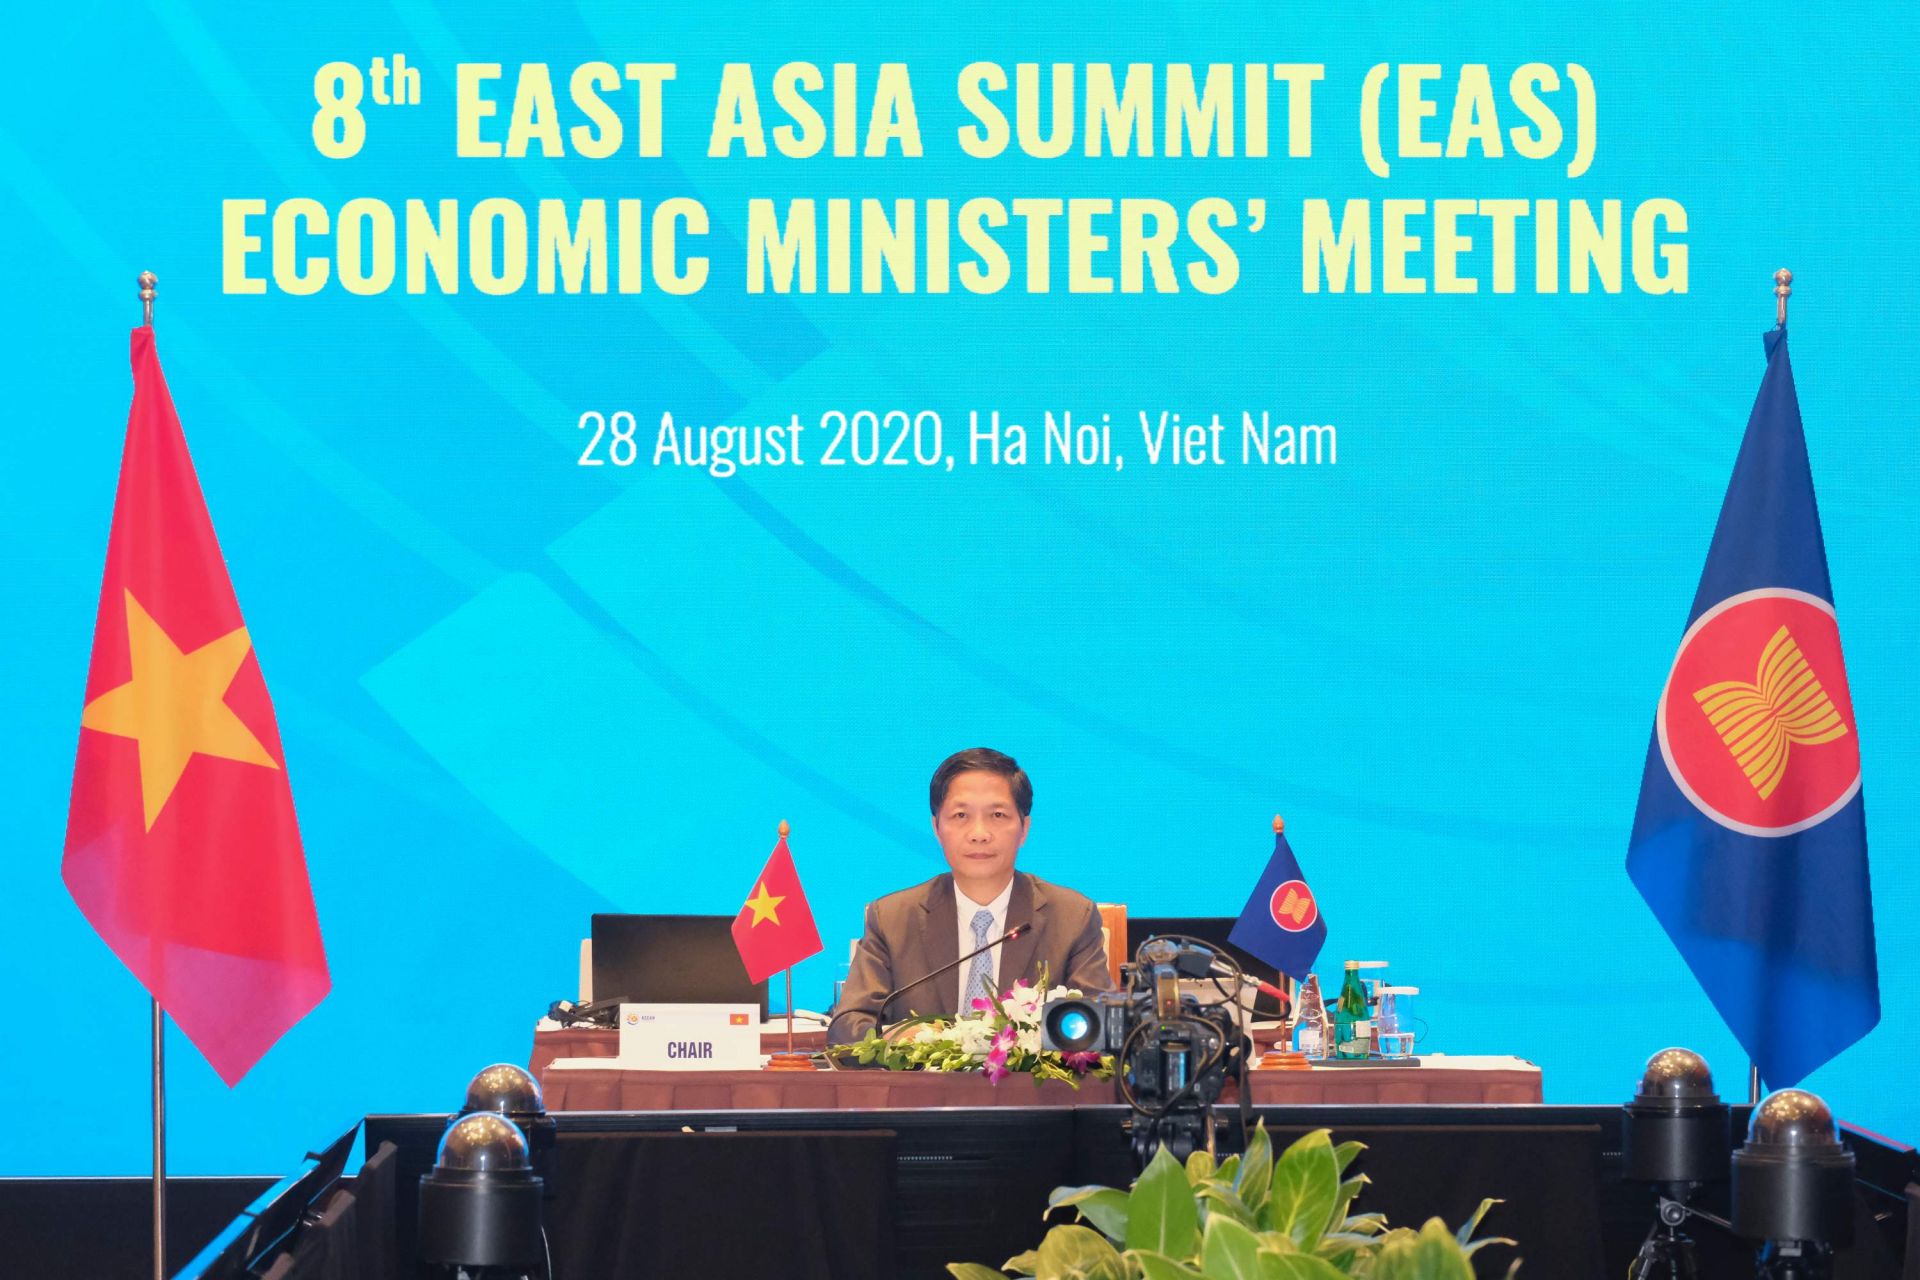 Bộ trưởng Bộ Công Thương Trần Tuấn Anh chủ trì Hội nghị Bộ trưởng Kinh tế Đông Á lần thứ 8